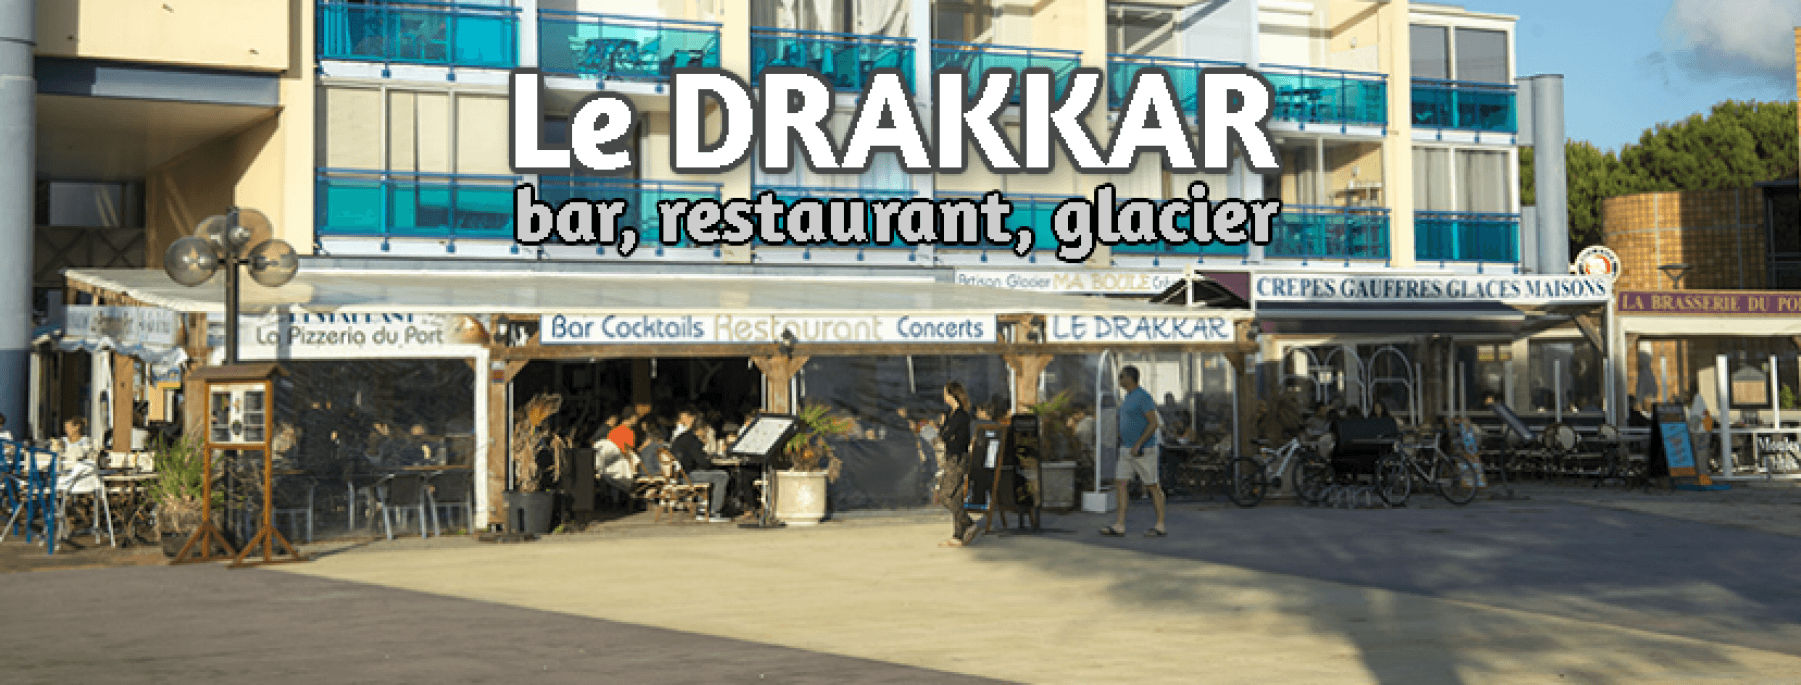 Le Drakkar + brasserie du port=un seul restaurant nommé brasserie du port